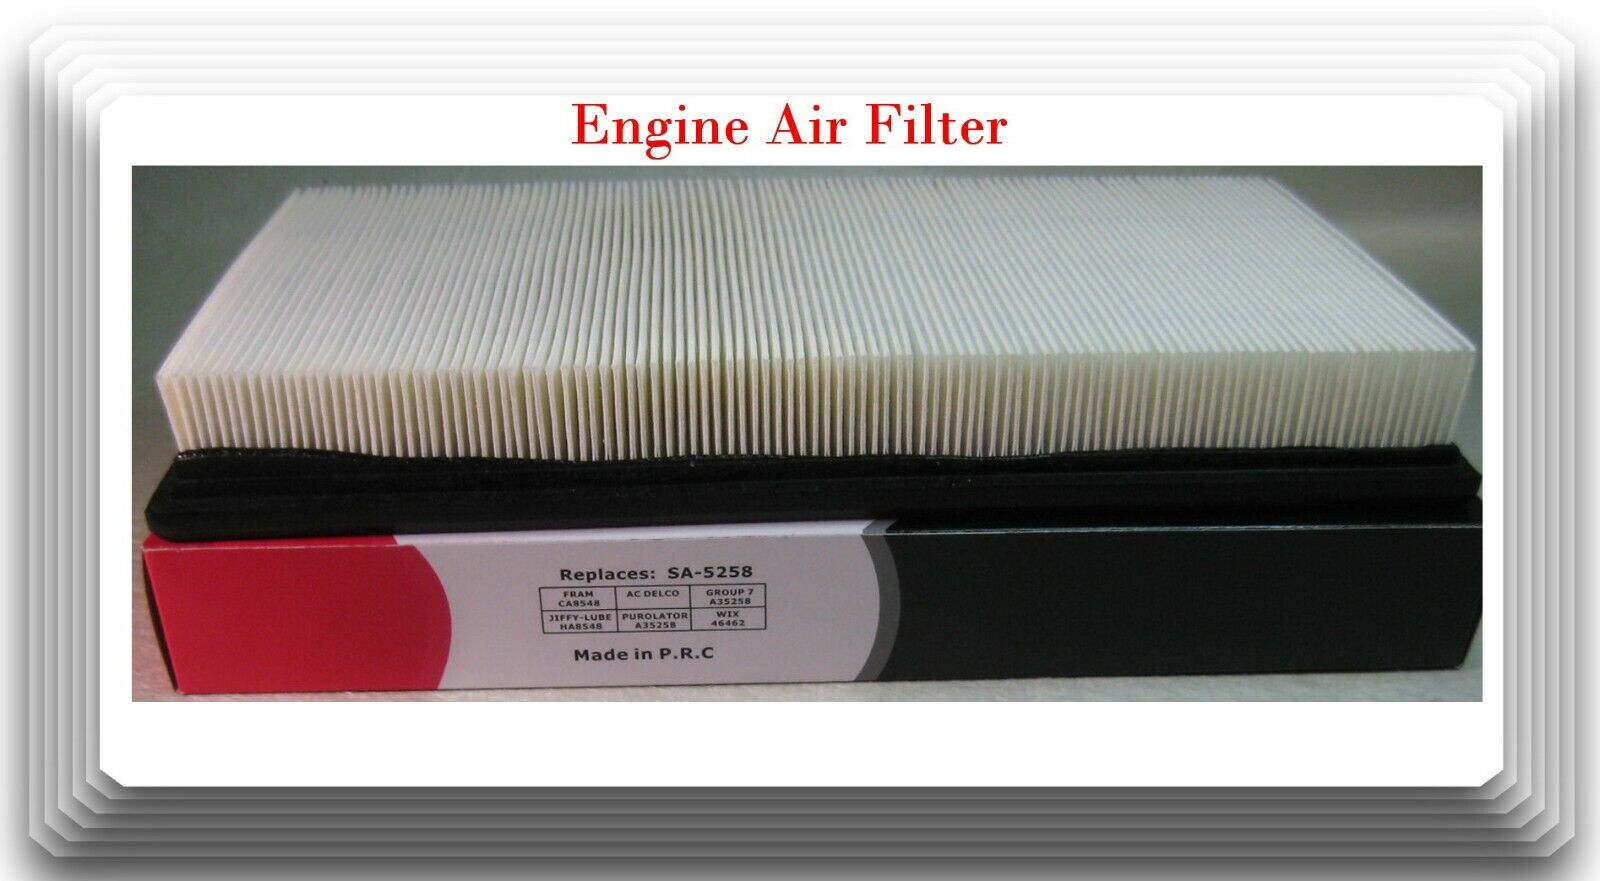 5258 CA8548 46462 Engine Air Filter Fits: Kia Sephia & Spectra L4 1.8L